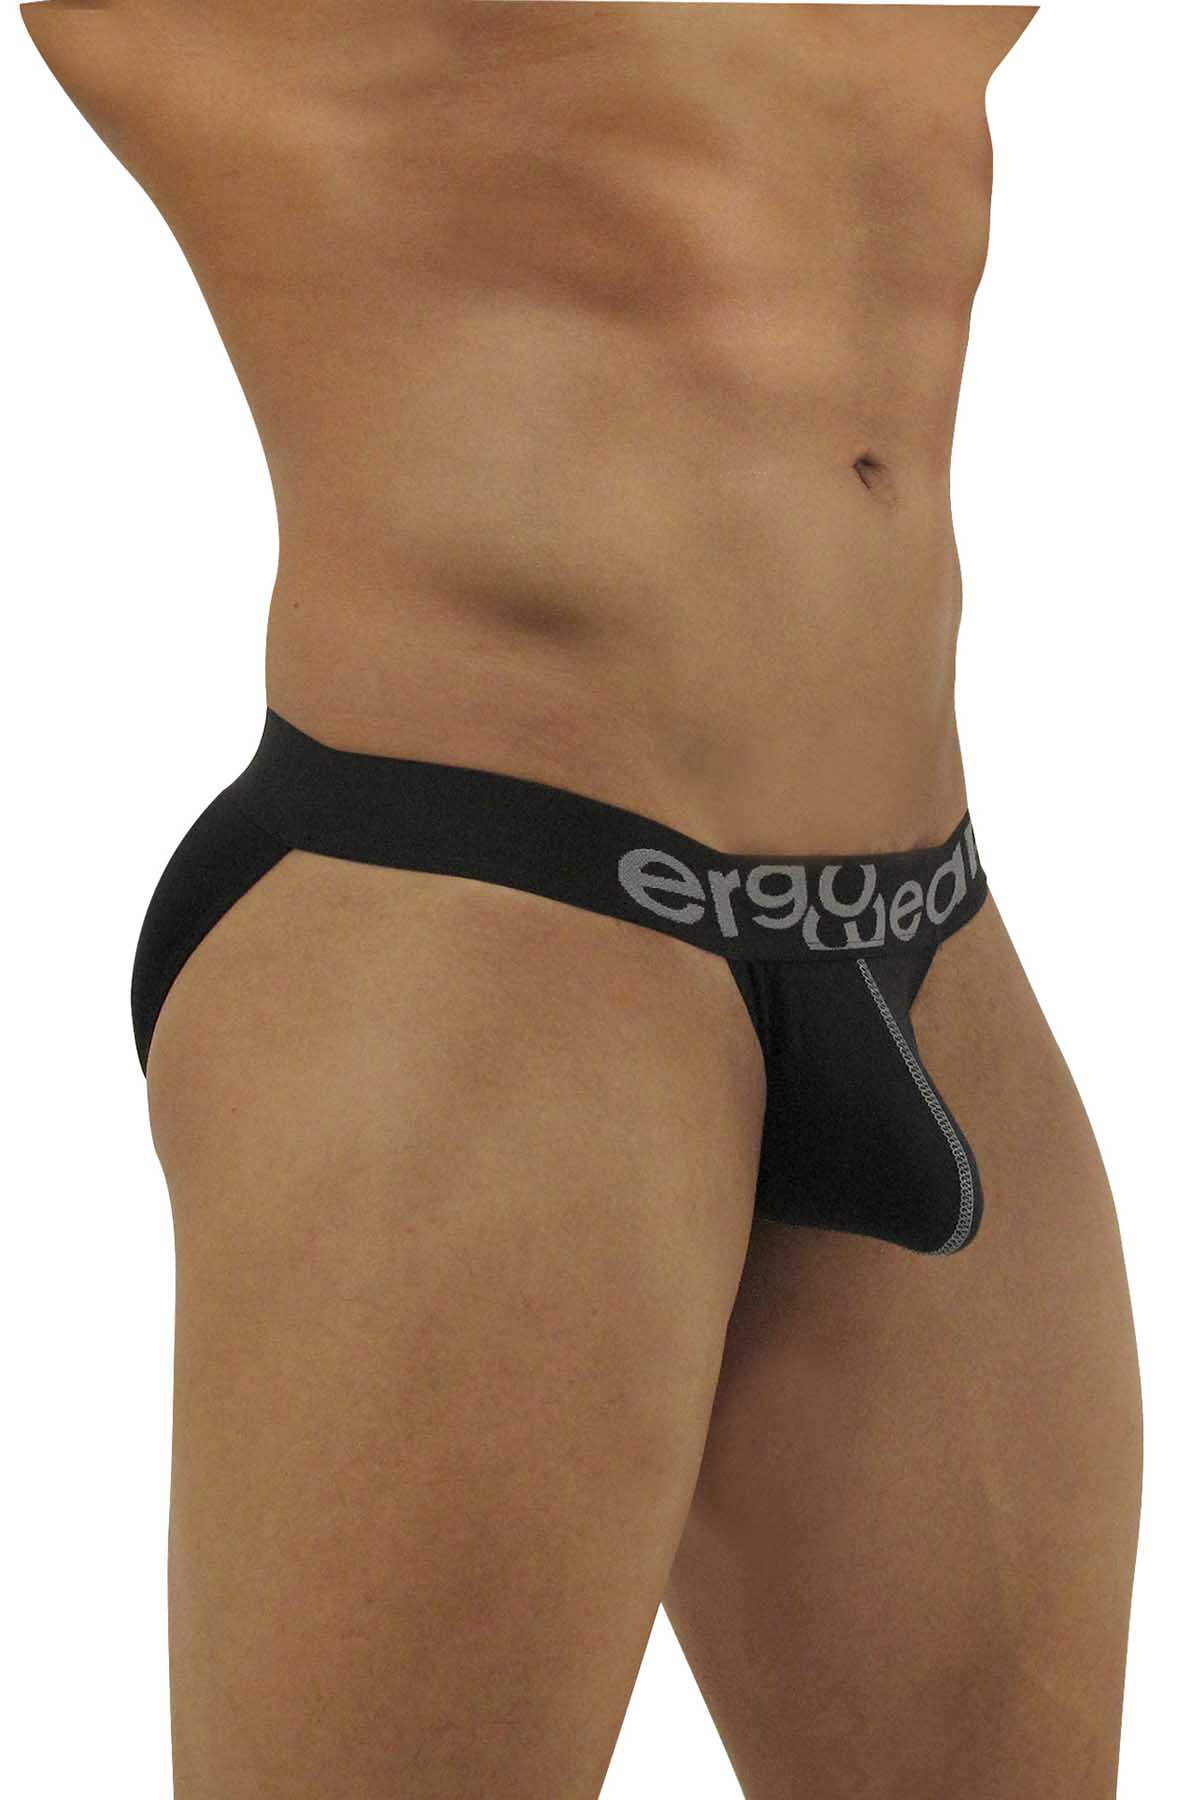 Ergowear Black Max Light Bikini